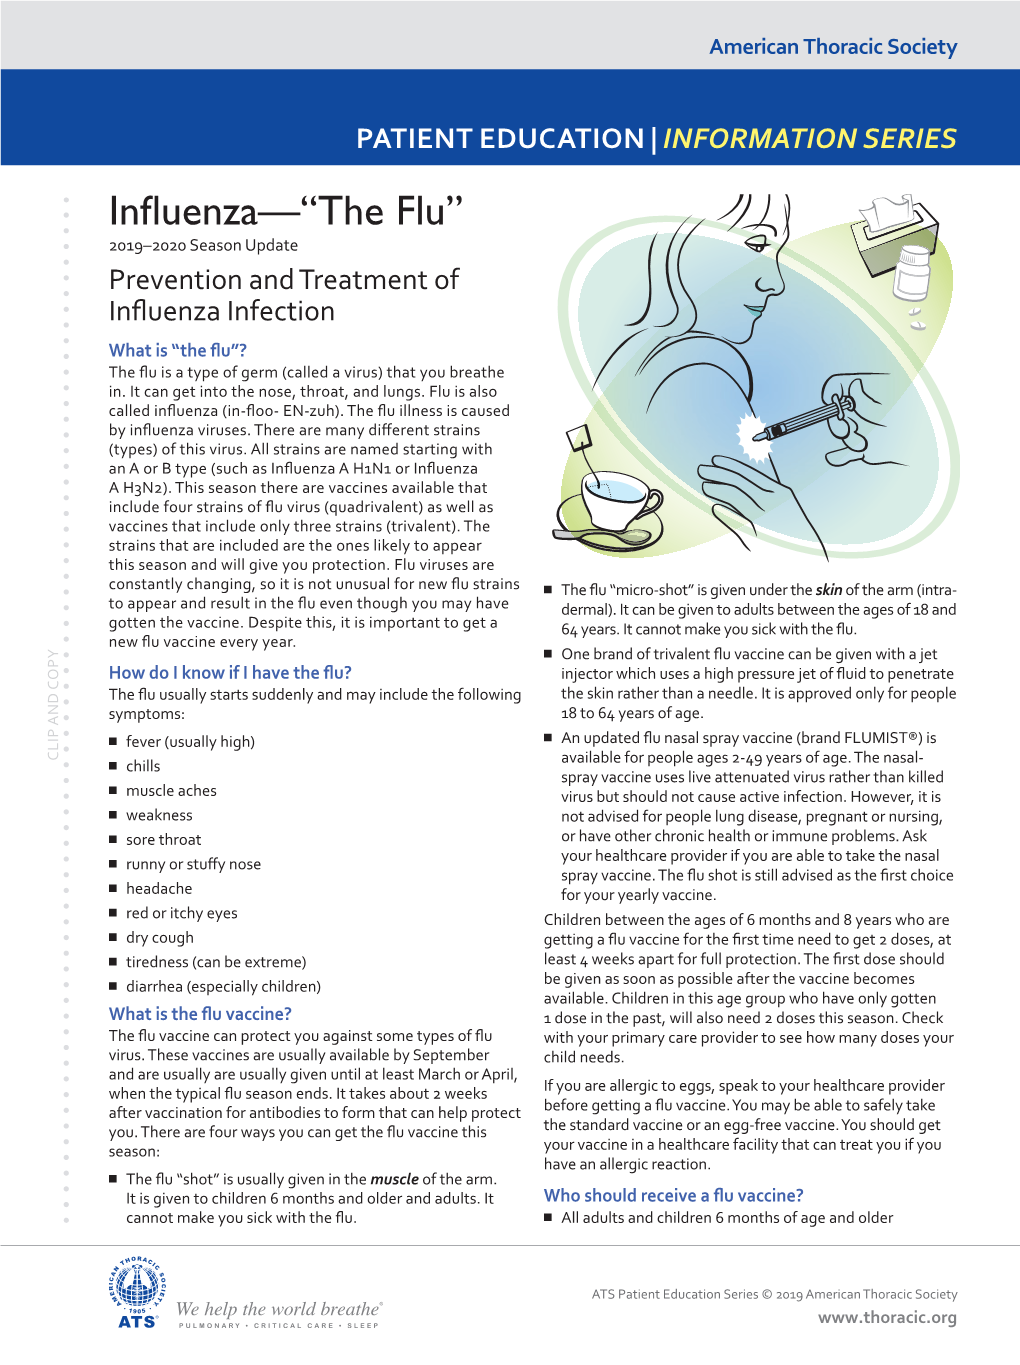 Influenza—“The Flu”